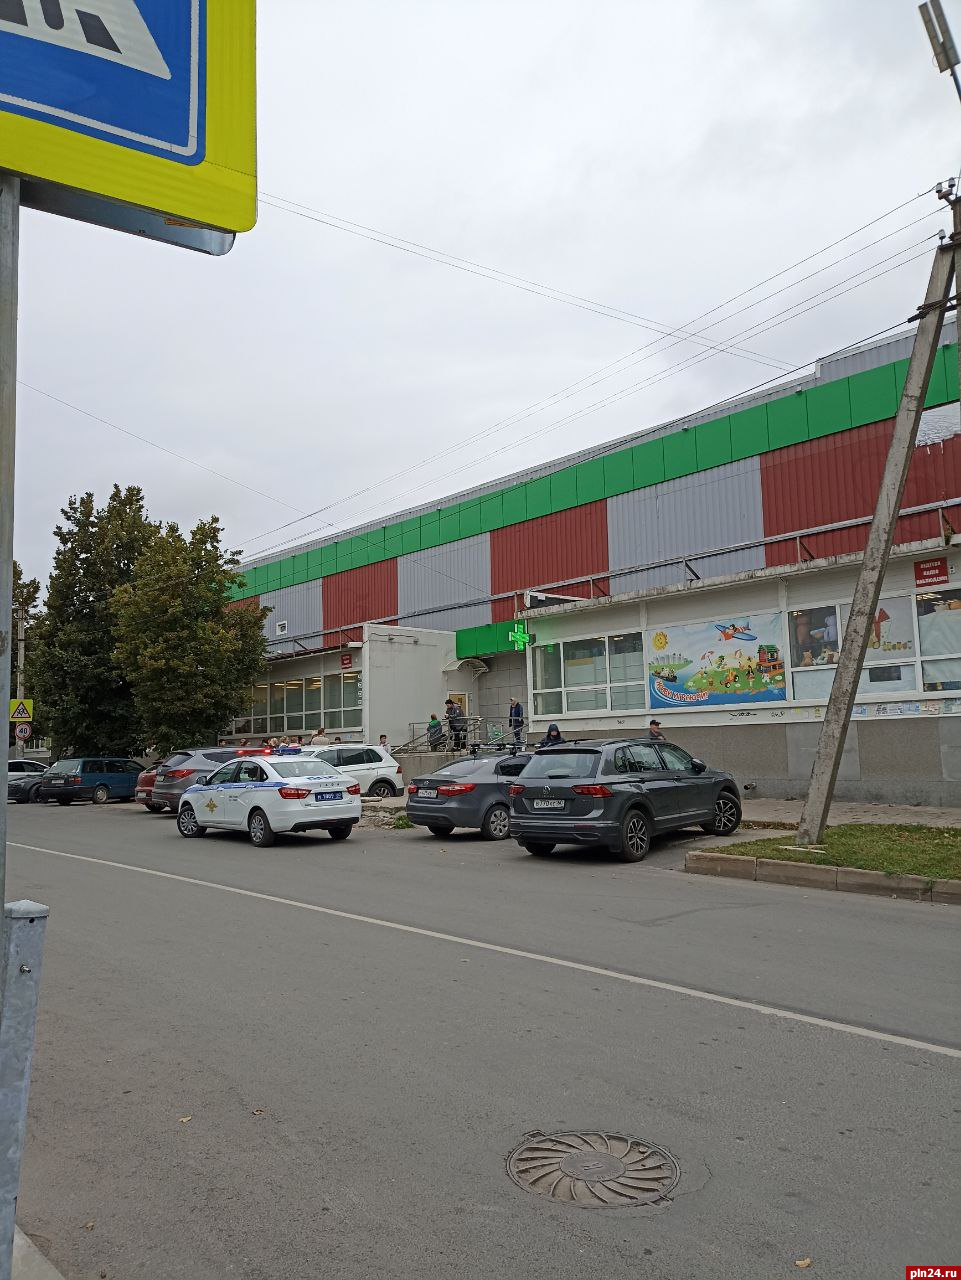 Сообщение о минировании продуктового магазина проверяют в Пскове